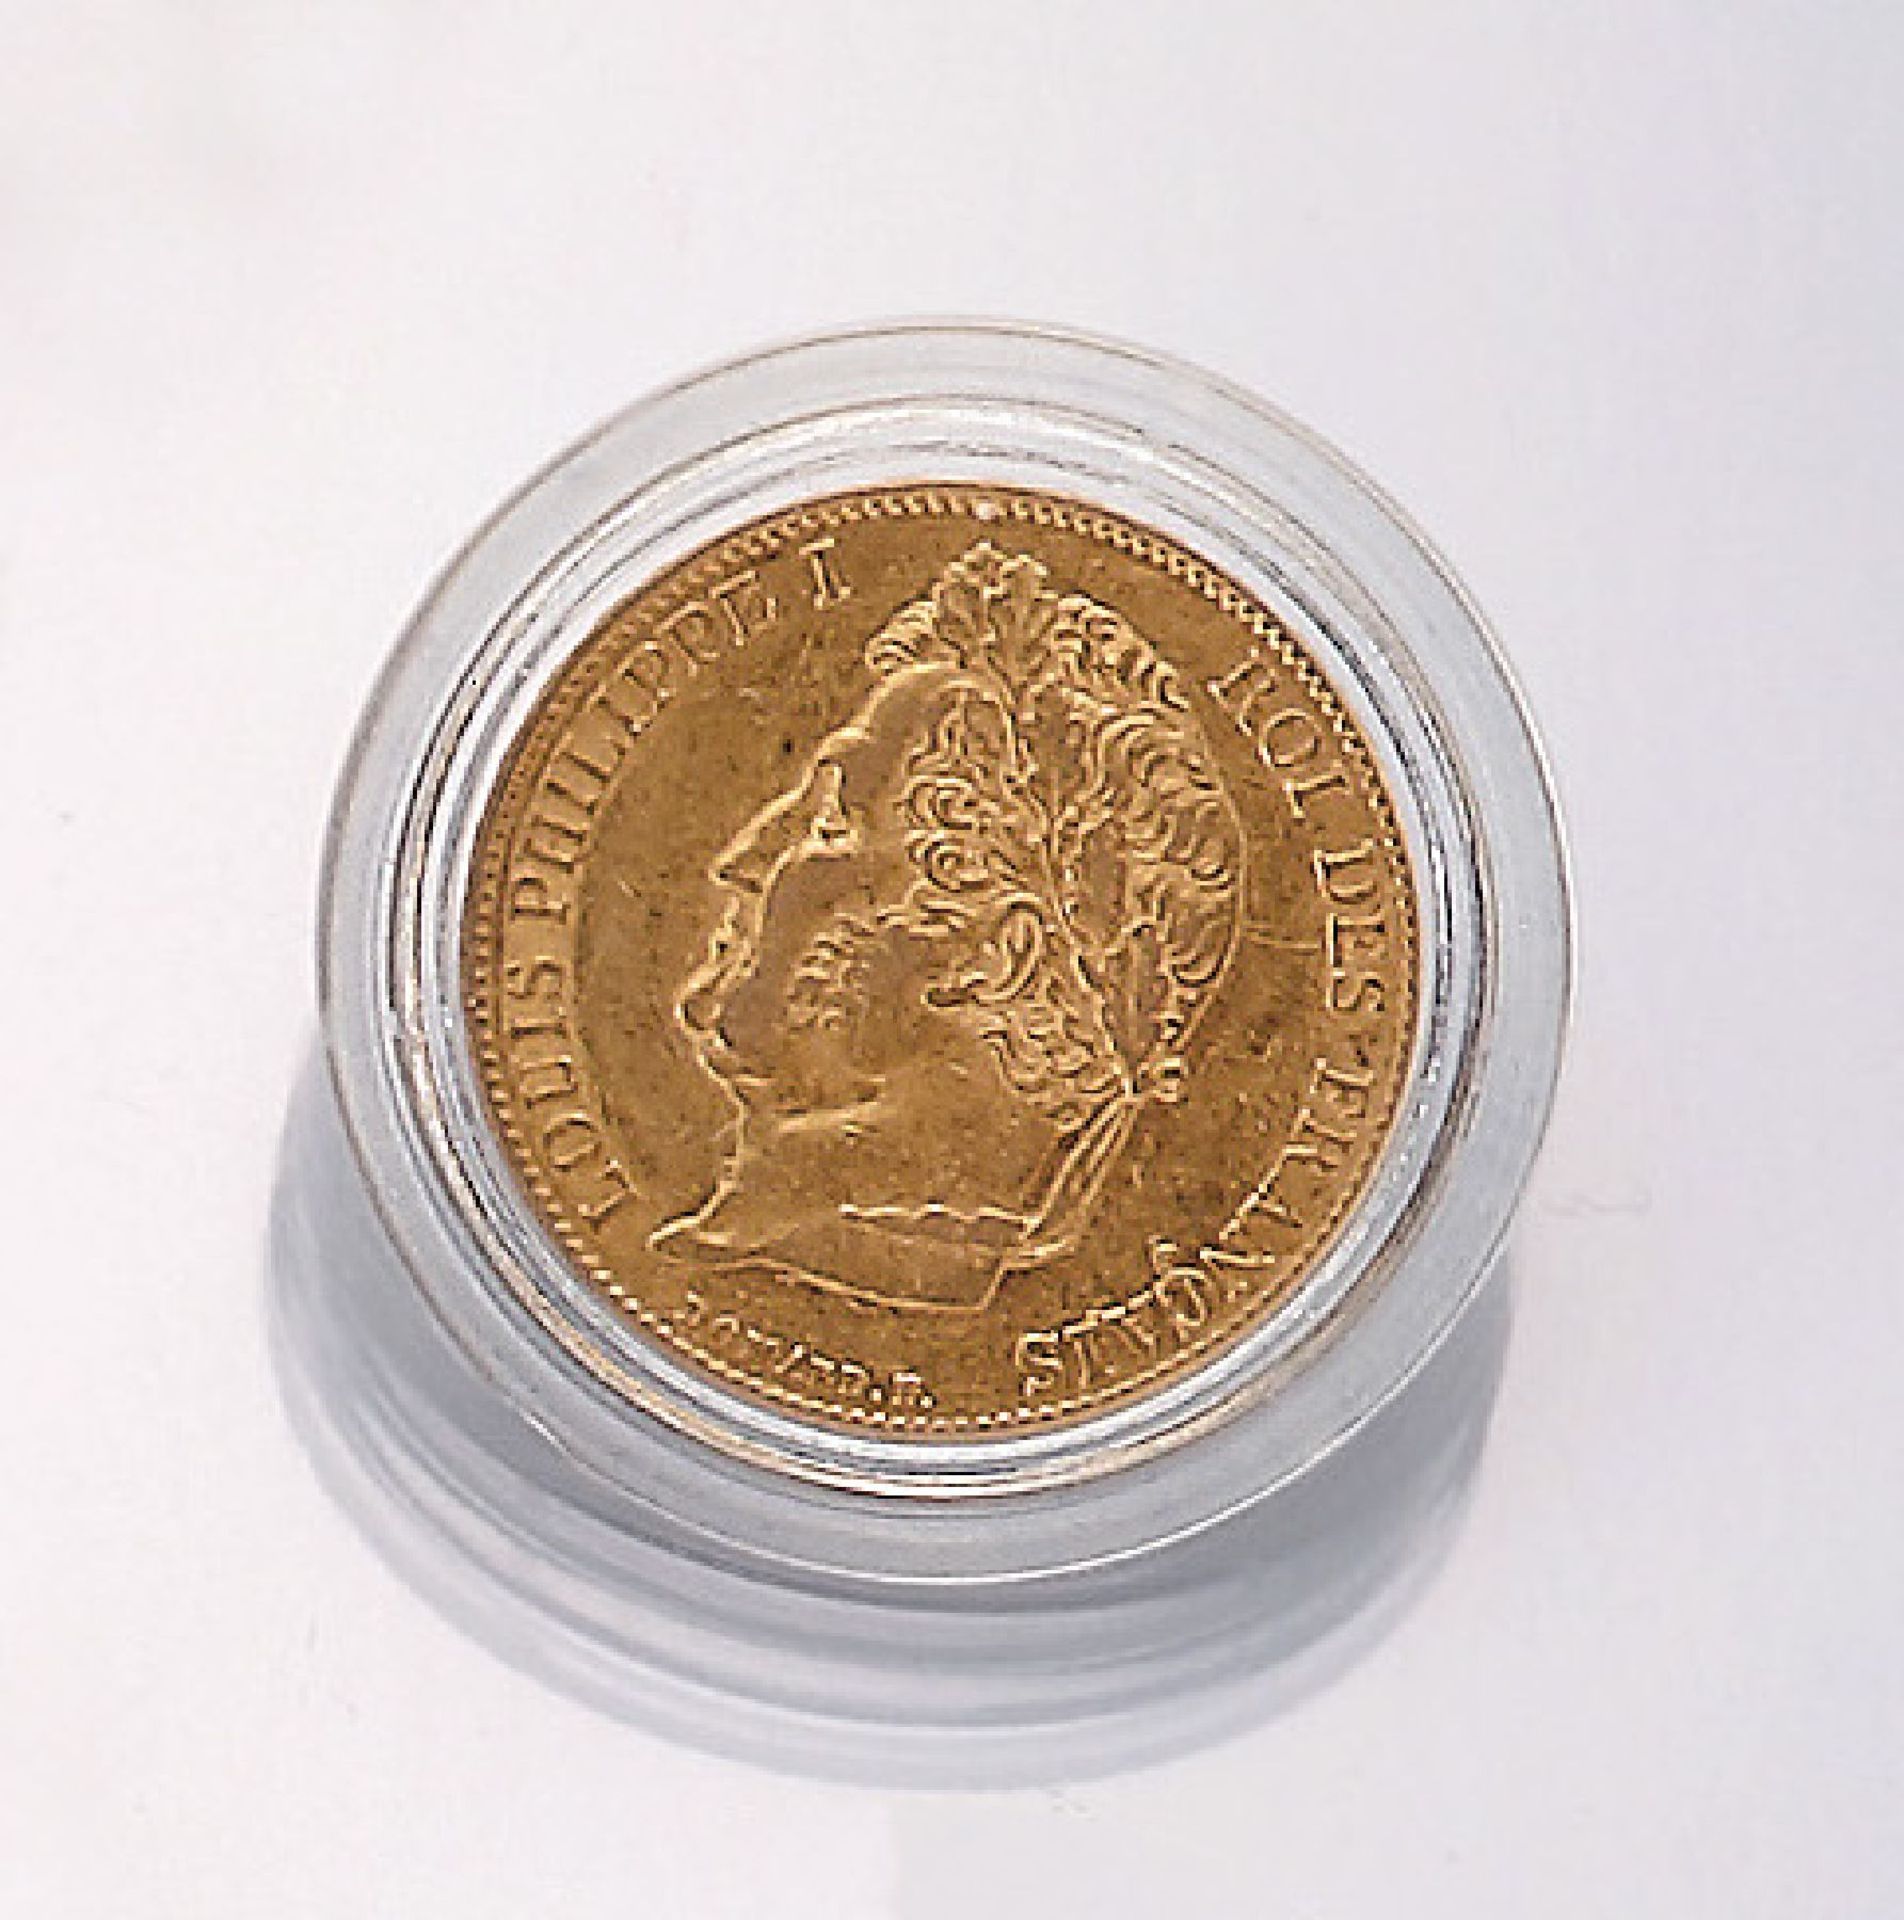 Goldmünze, 20 Francs, Frankreich, 1859, Louis Philippe I., Roi des francais, in Münzkapsel, mit